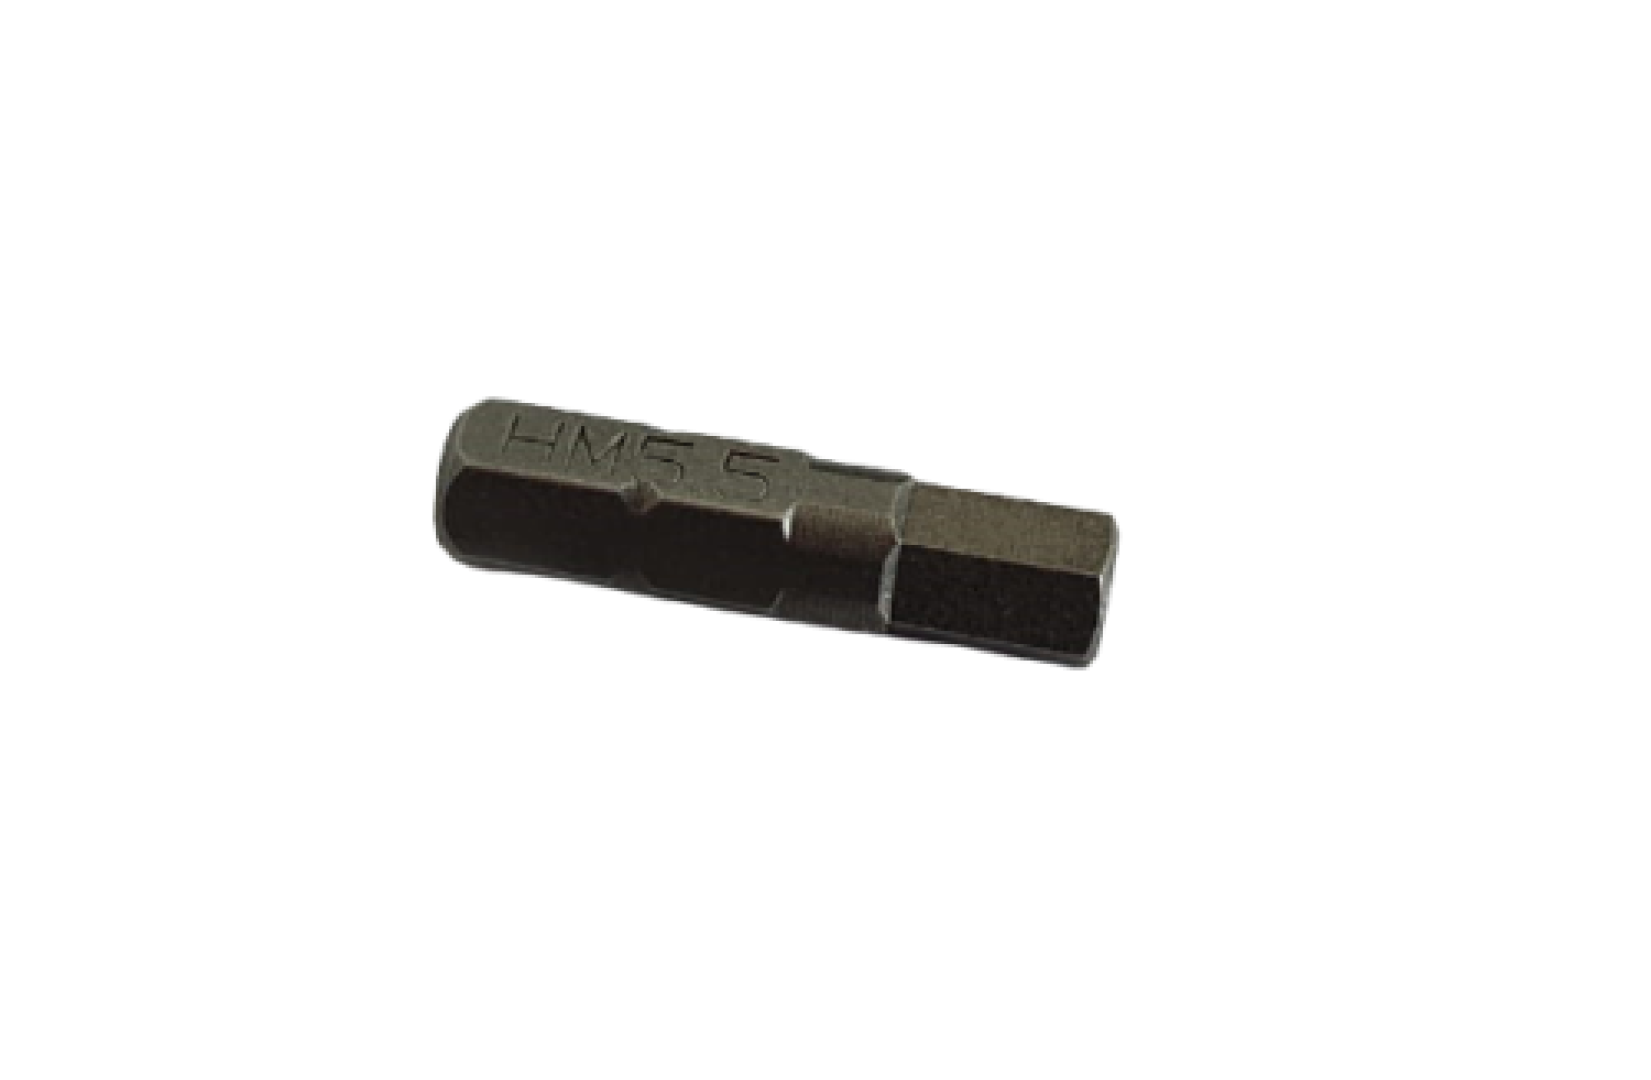 Kombiset 5,5mm Innensechskant Schlüssel + Spezial Bit für Zaunschrauben Zaunbau